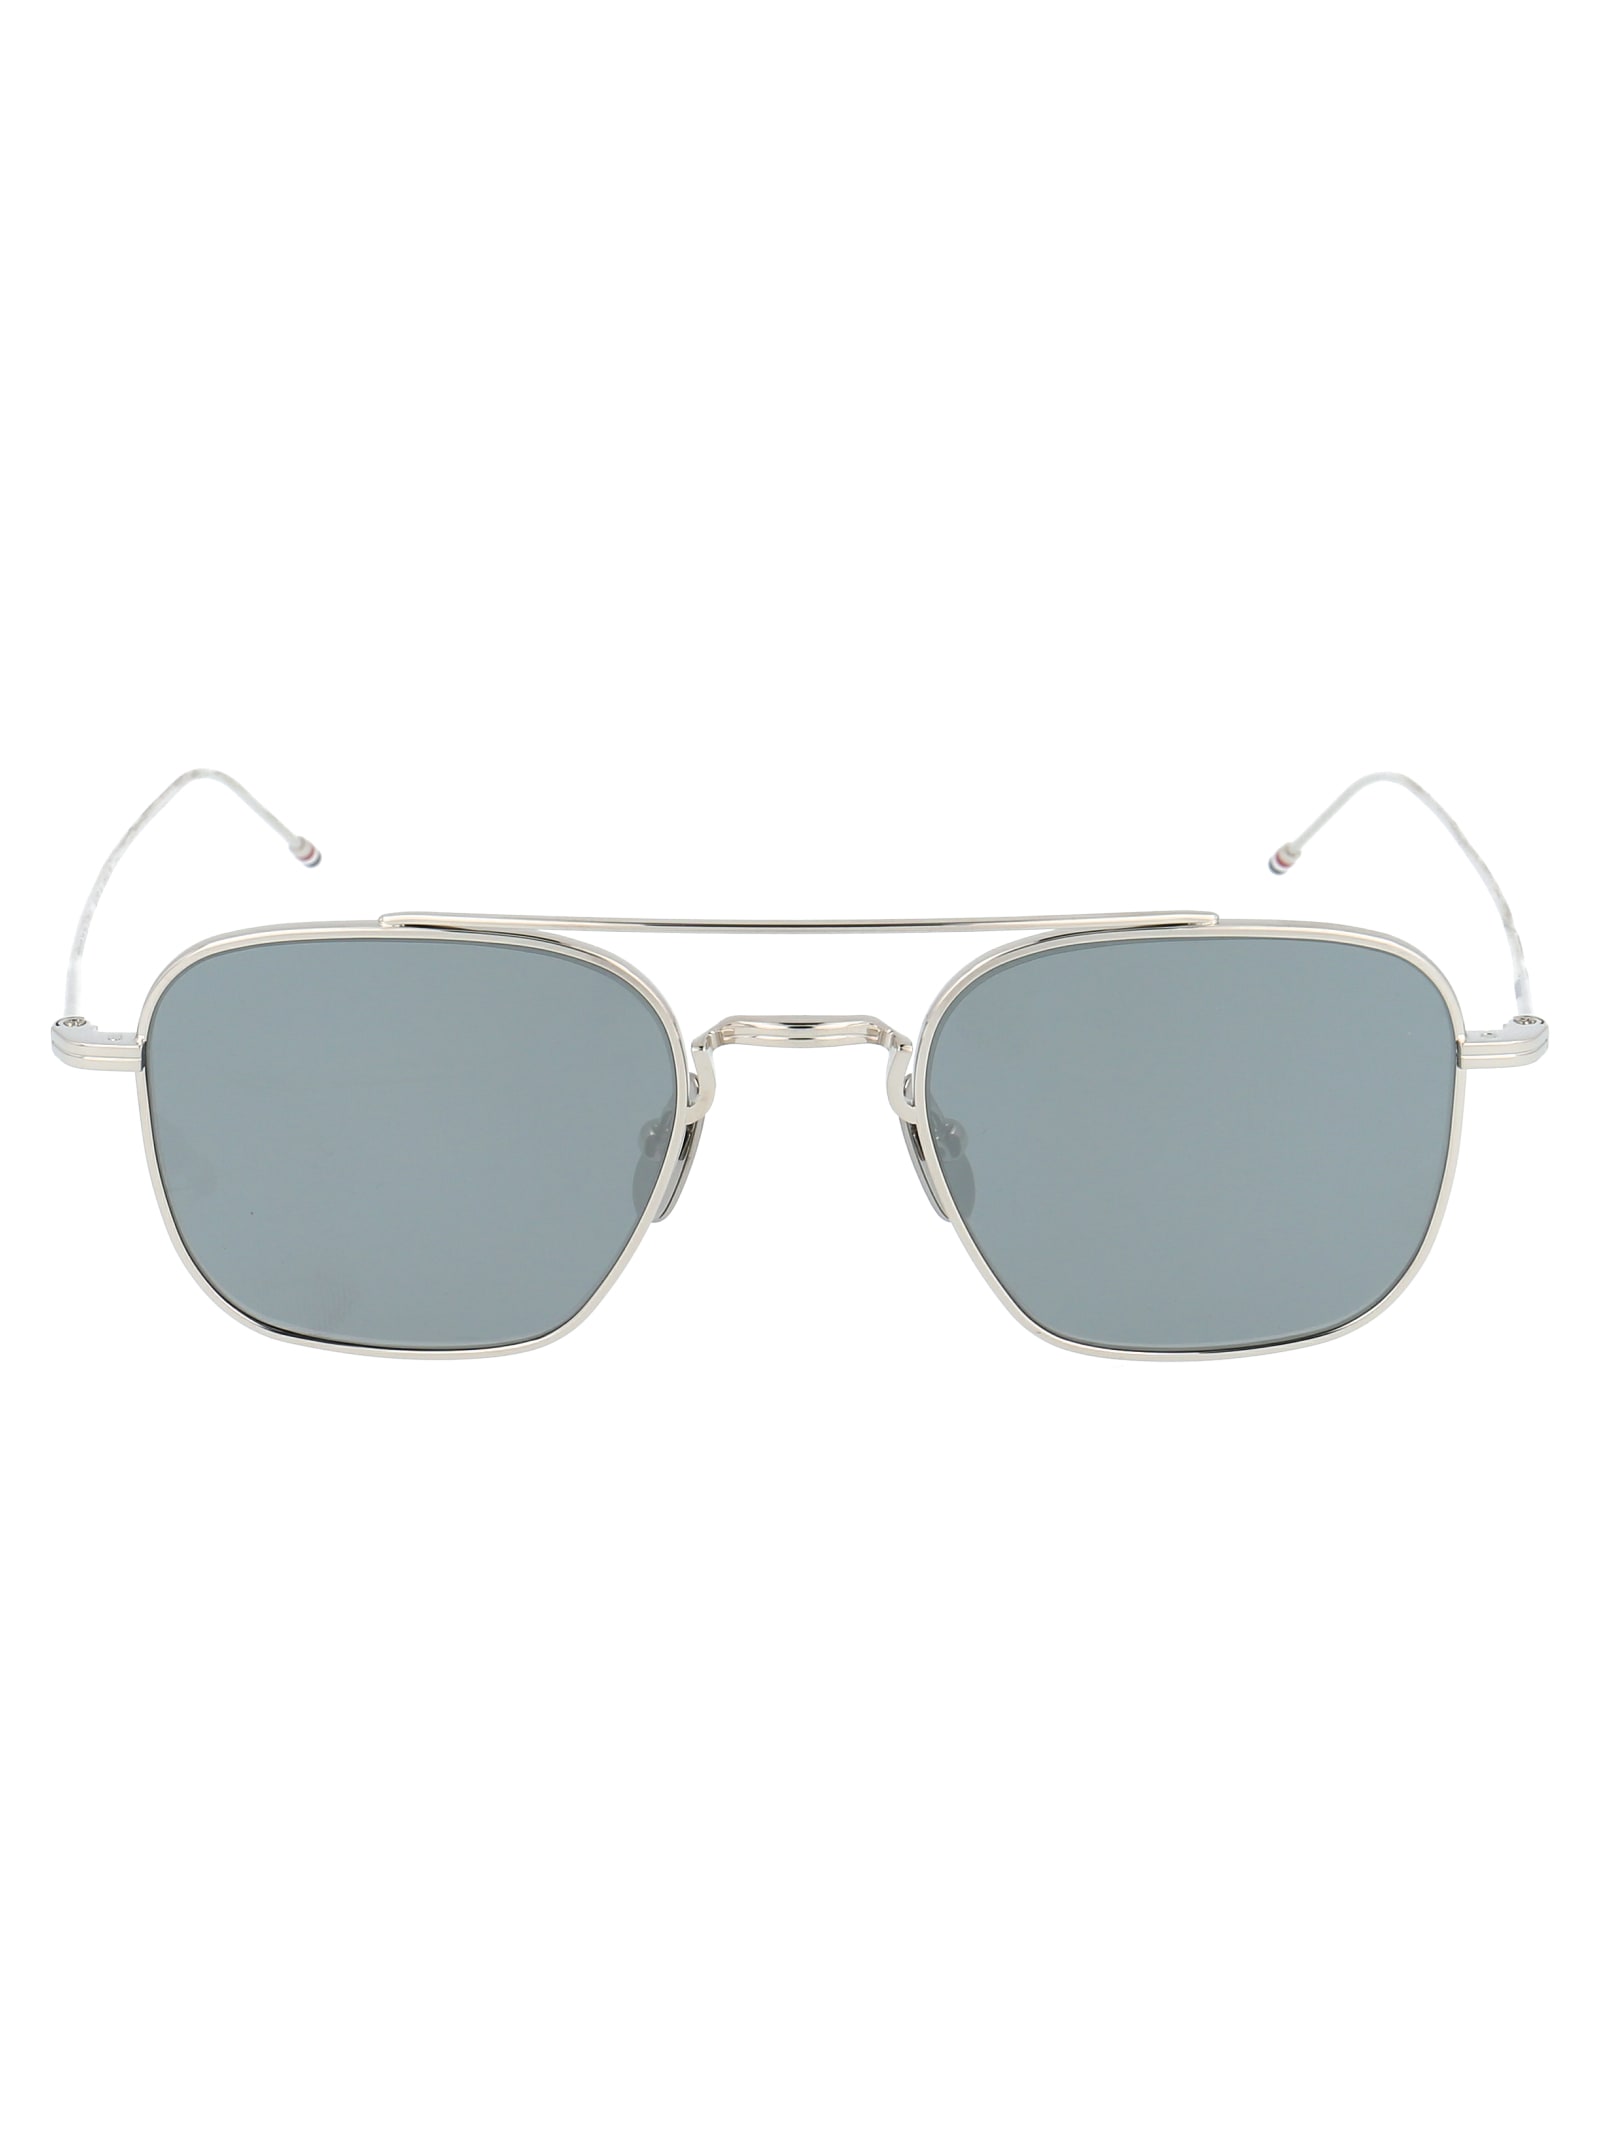 Thom Browne Tb-907 Sunglasses In Silver W/ Dark Grey - Silver Flash Mirror - Ar